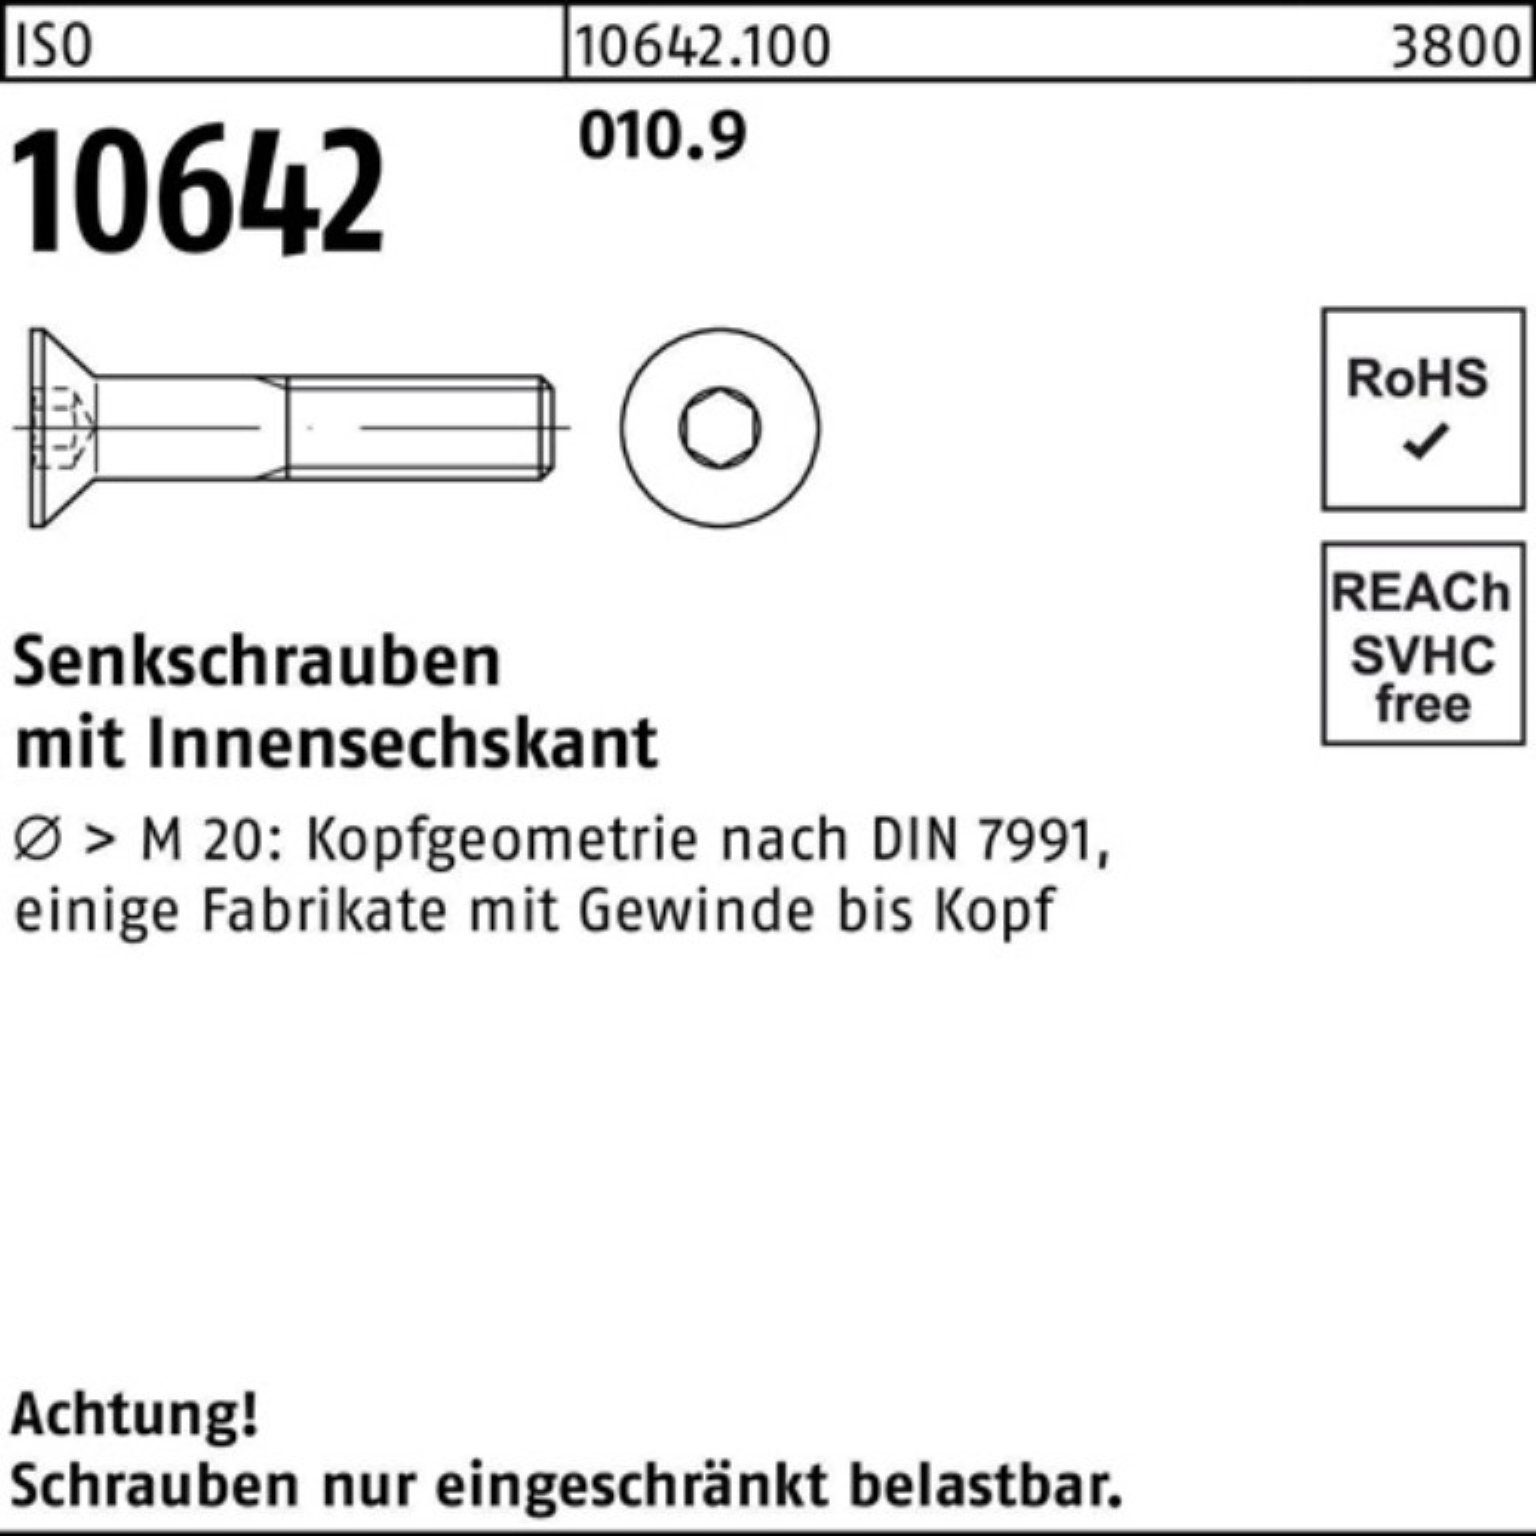 Reyher Senkschraube Pack Senkschraube 200er IS 10642 ISO Stück M6x 010.9 Innen-6kt 200 60